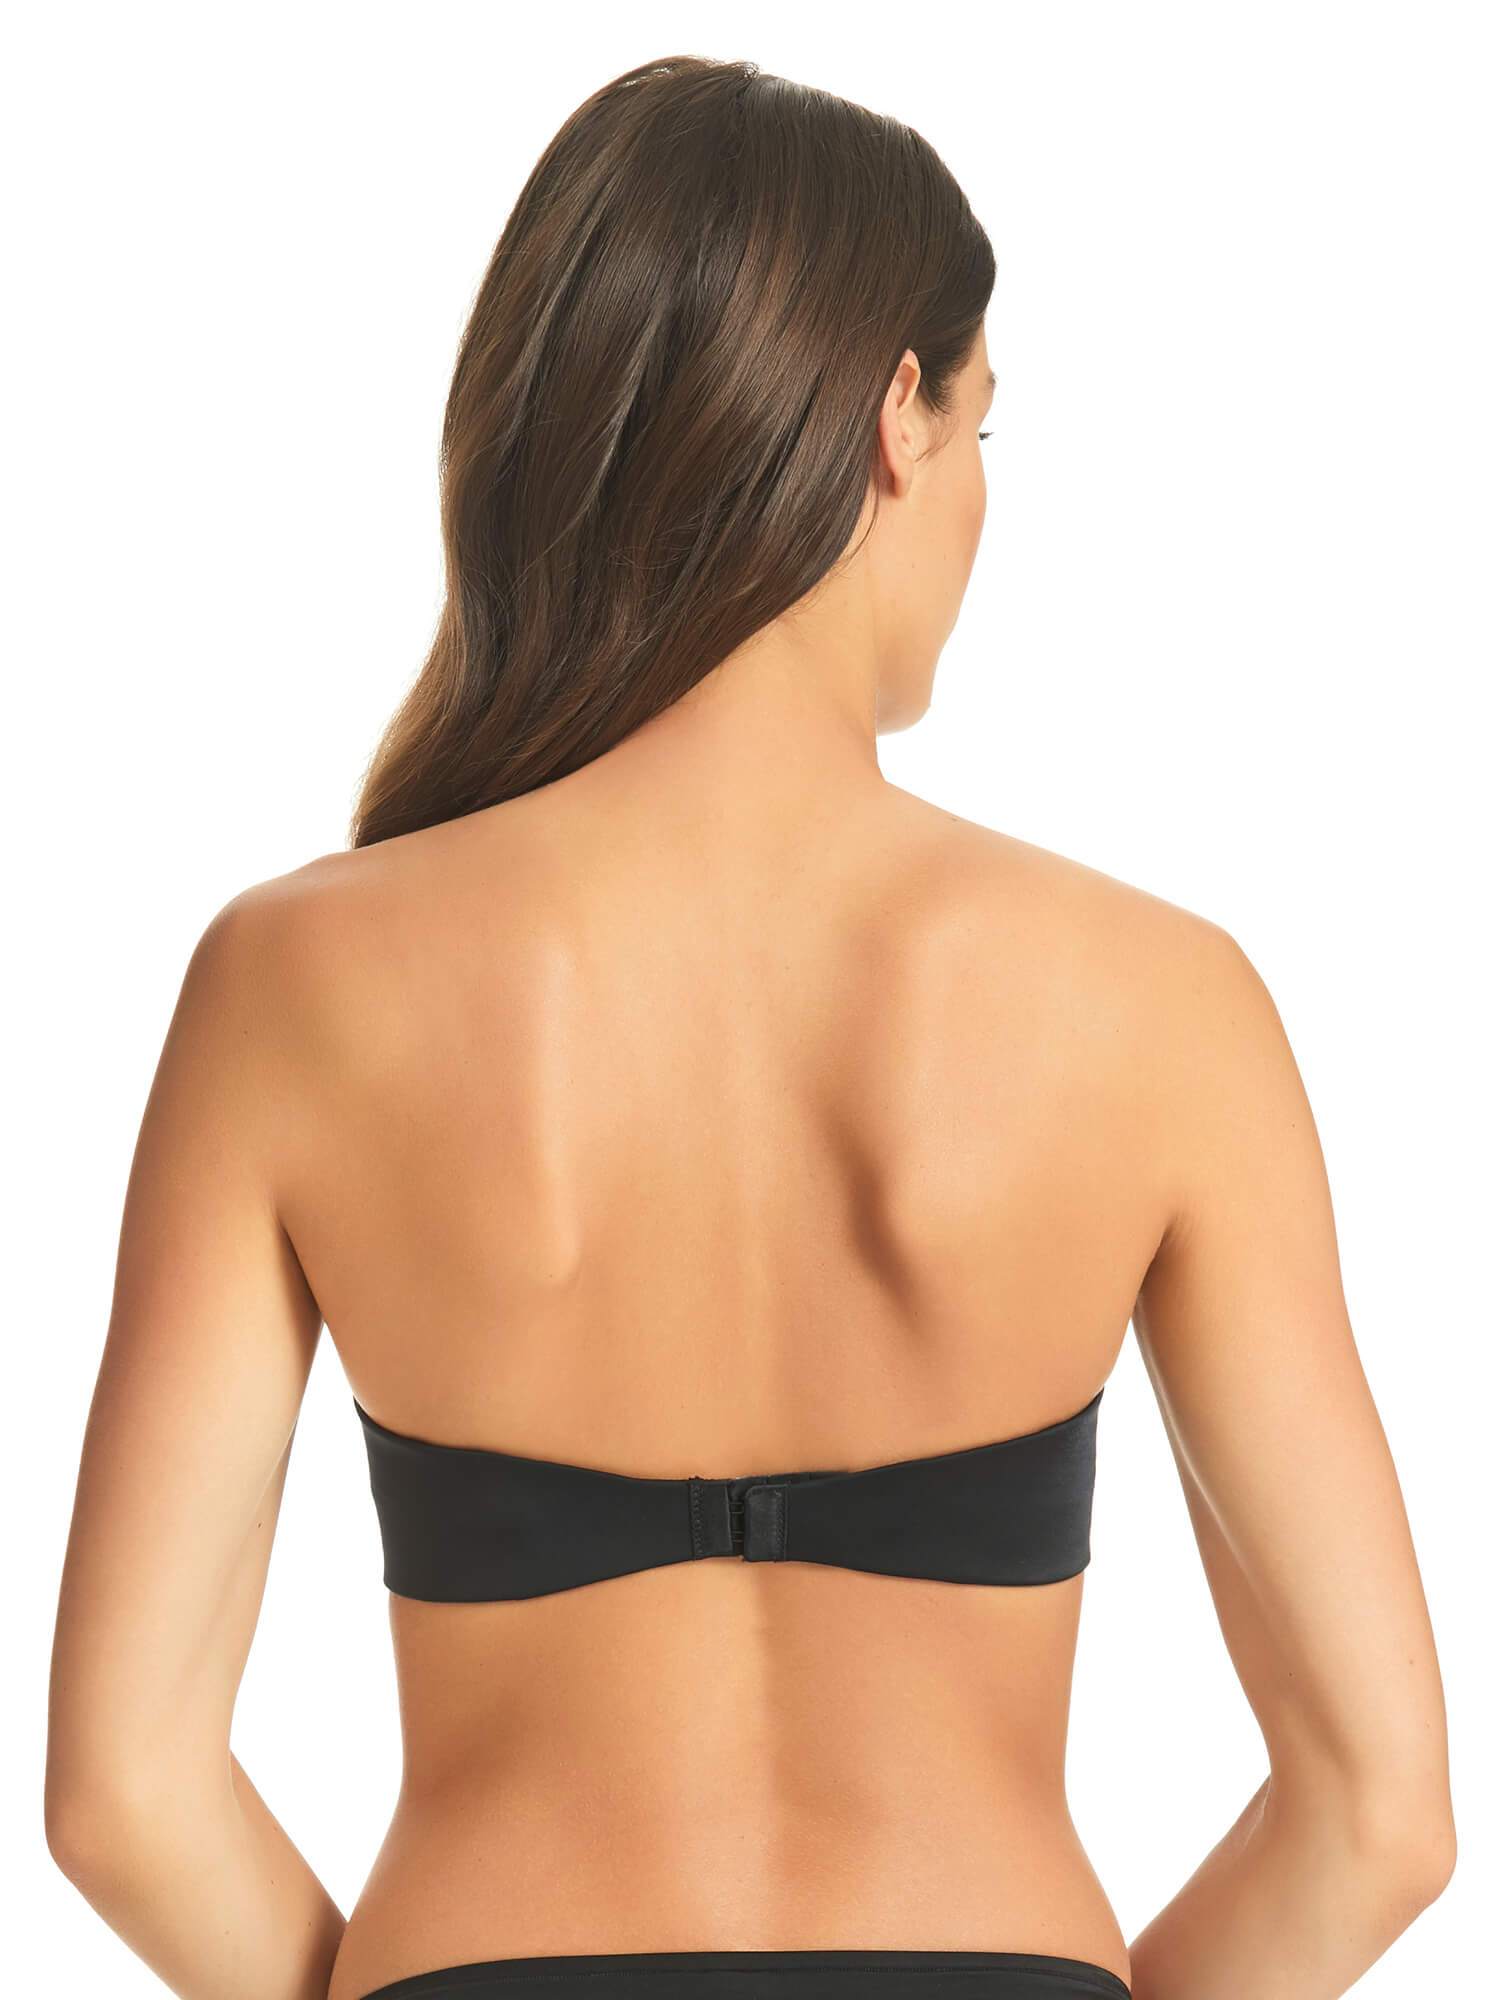 Fine Lines Women's Refined 6 Way Low Cut Strapless Bra - Black - Size 10C